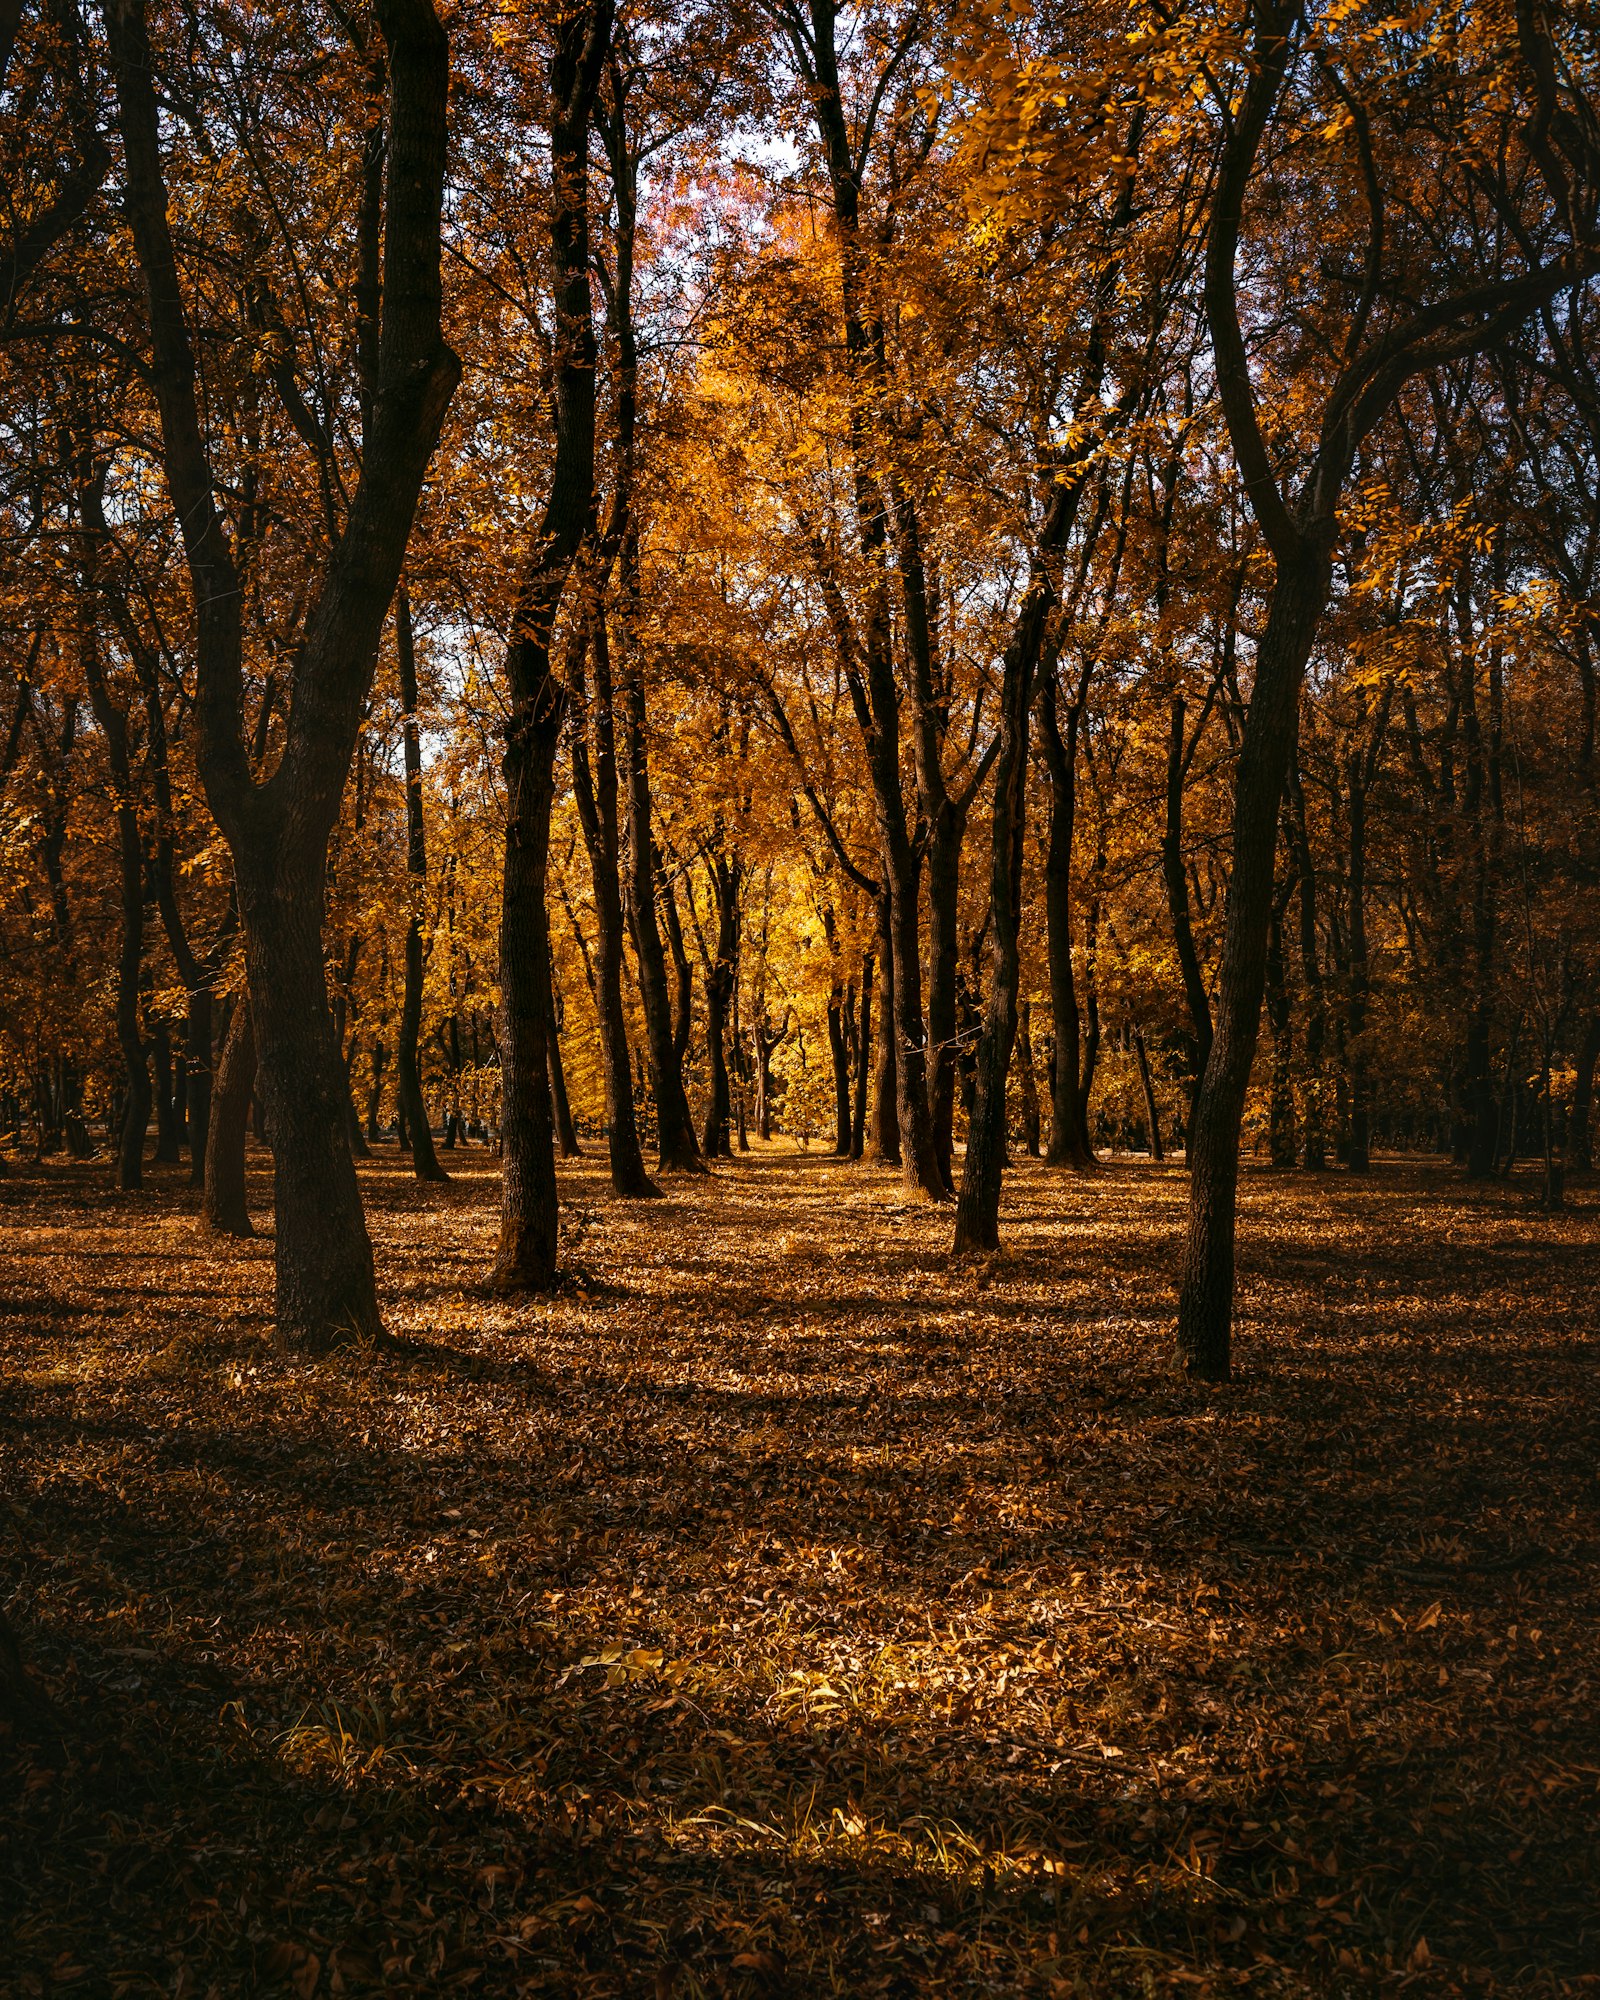 AF Zoom-Nikkor 28-80mm f/3.3-5.6G sample photo. Forest walk during daytime photography